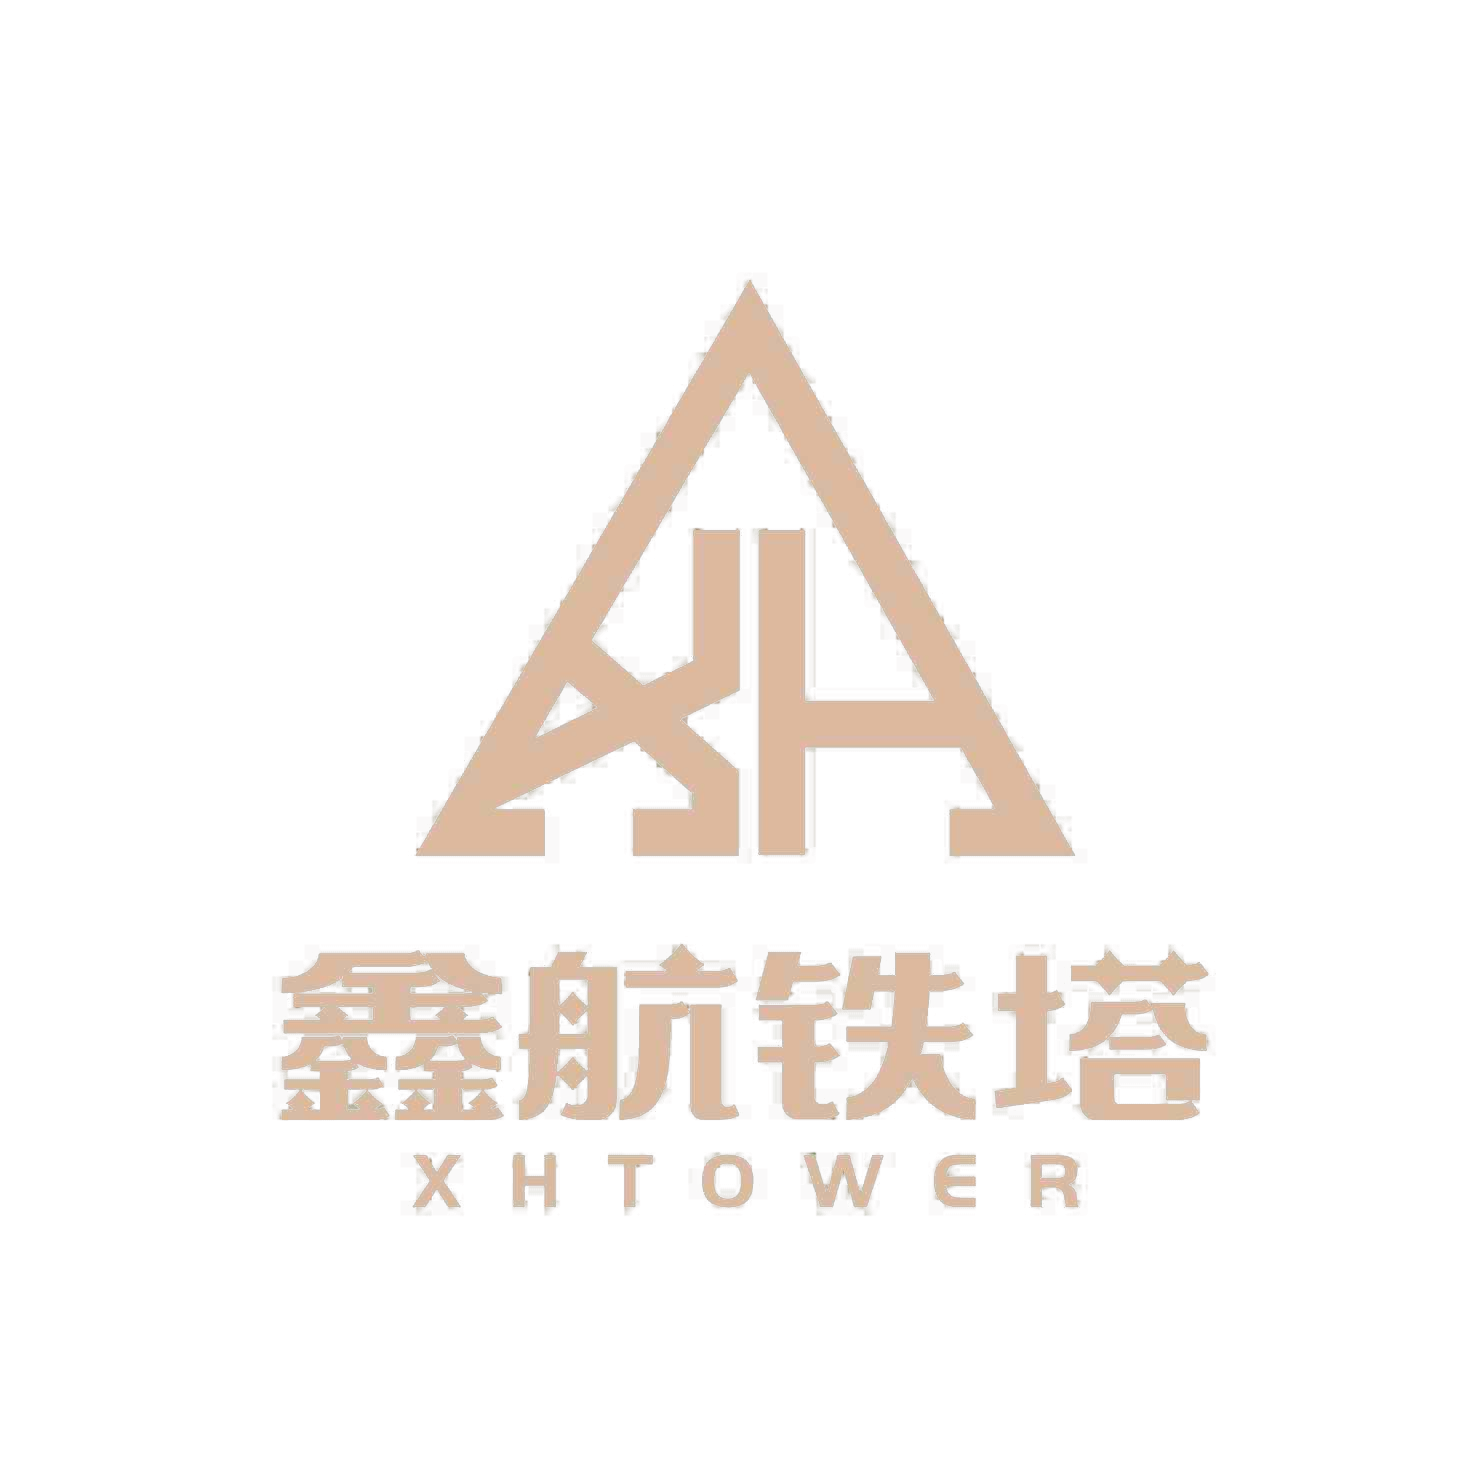 شركة Xinhang Tower Technology Co.,Ltd.